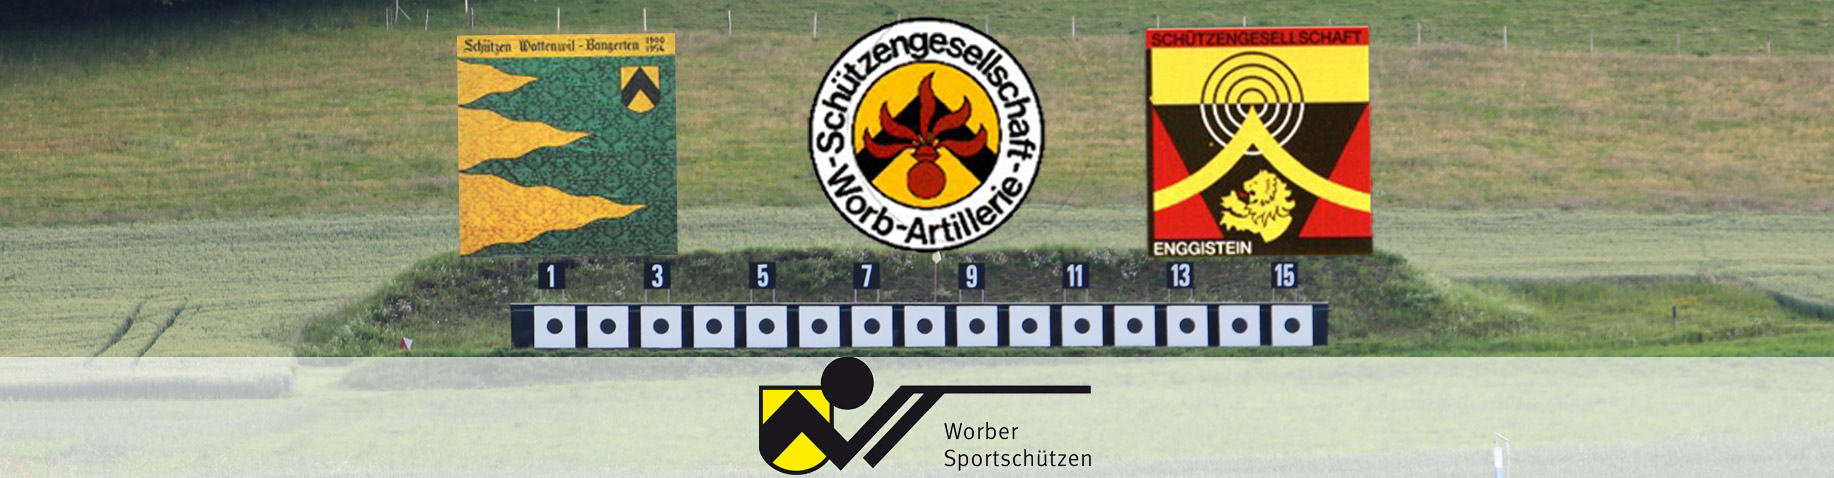 Fusion der 3 Schützenvereine Enggistein, Worb-Artillerie, Wattenwil-Bangerten